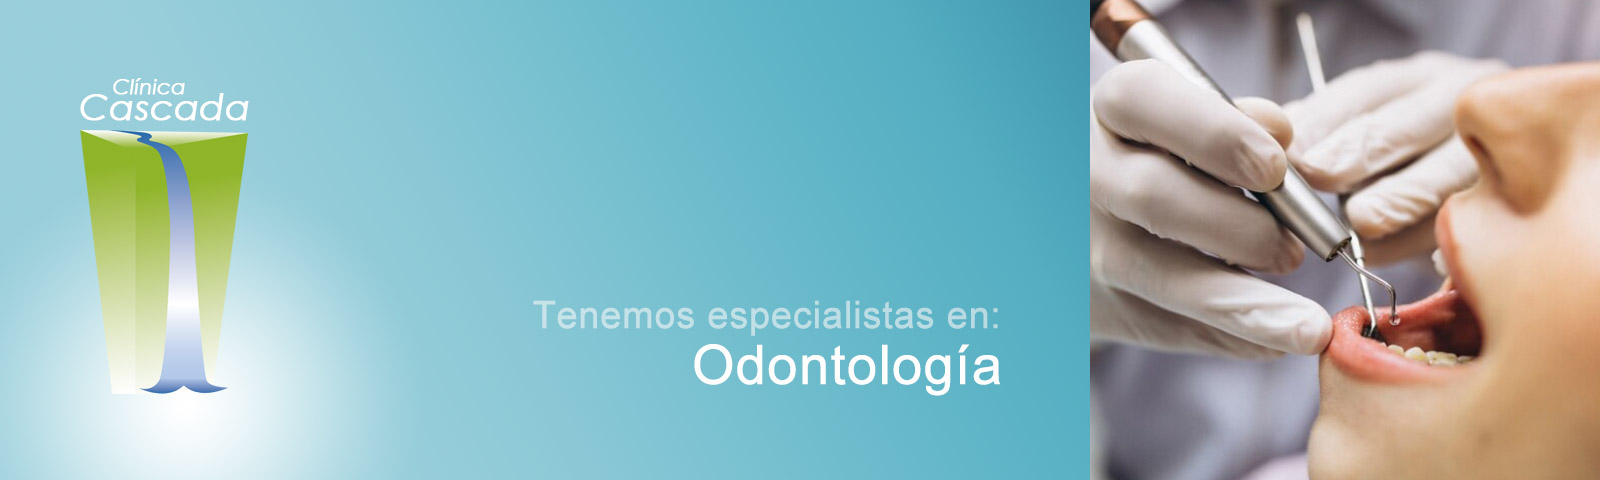 Especialistas en Odontología